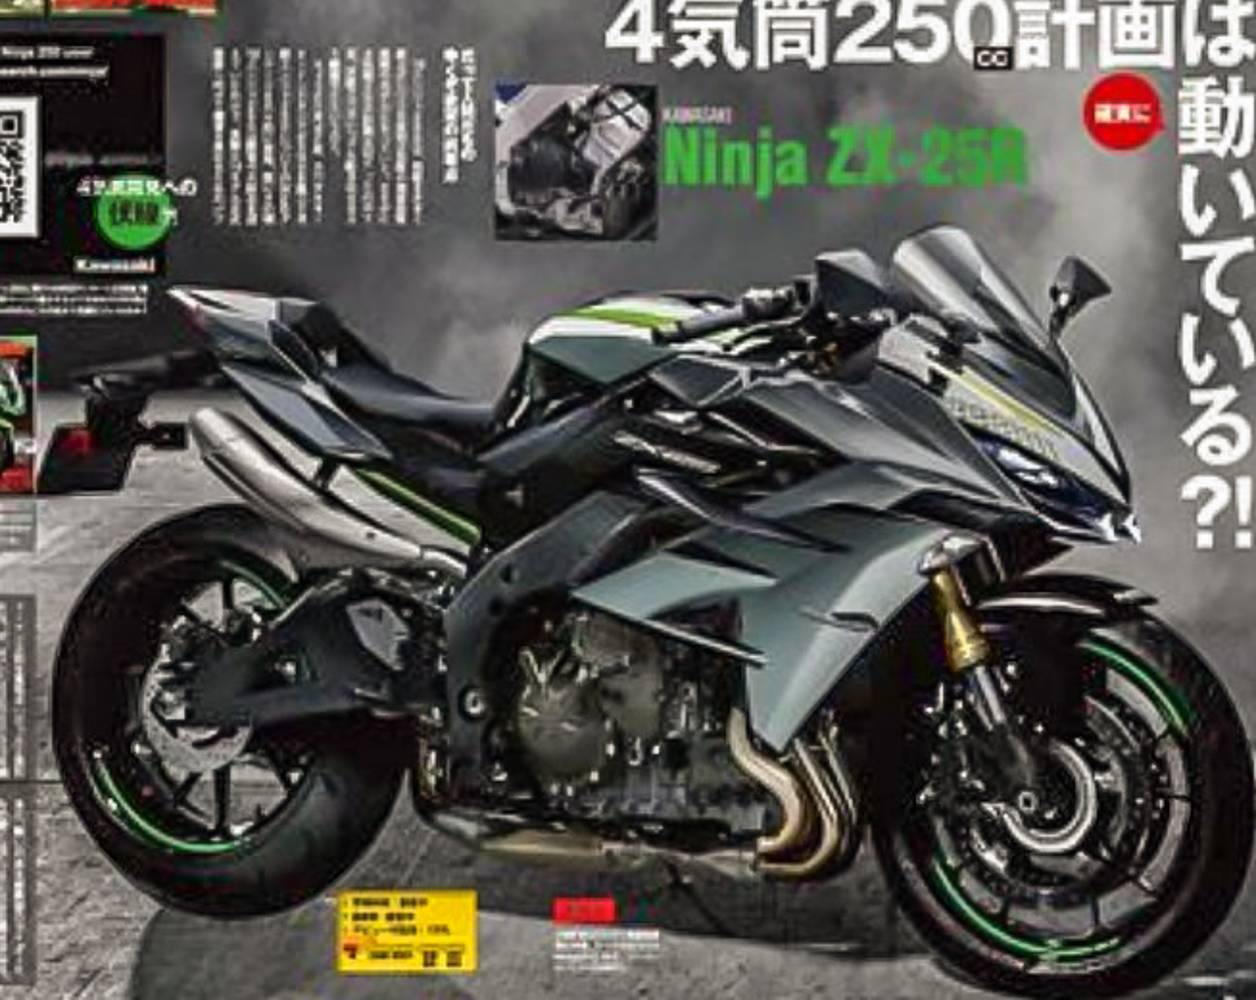 Hot Penampakan Kawasaki Ninja 250 Mesin 4 Silinder Berlabel ZX 25R